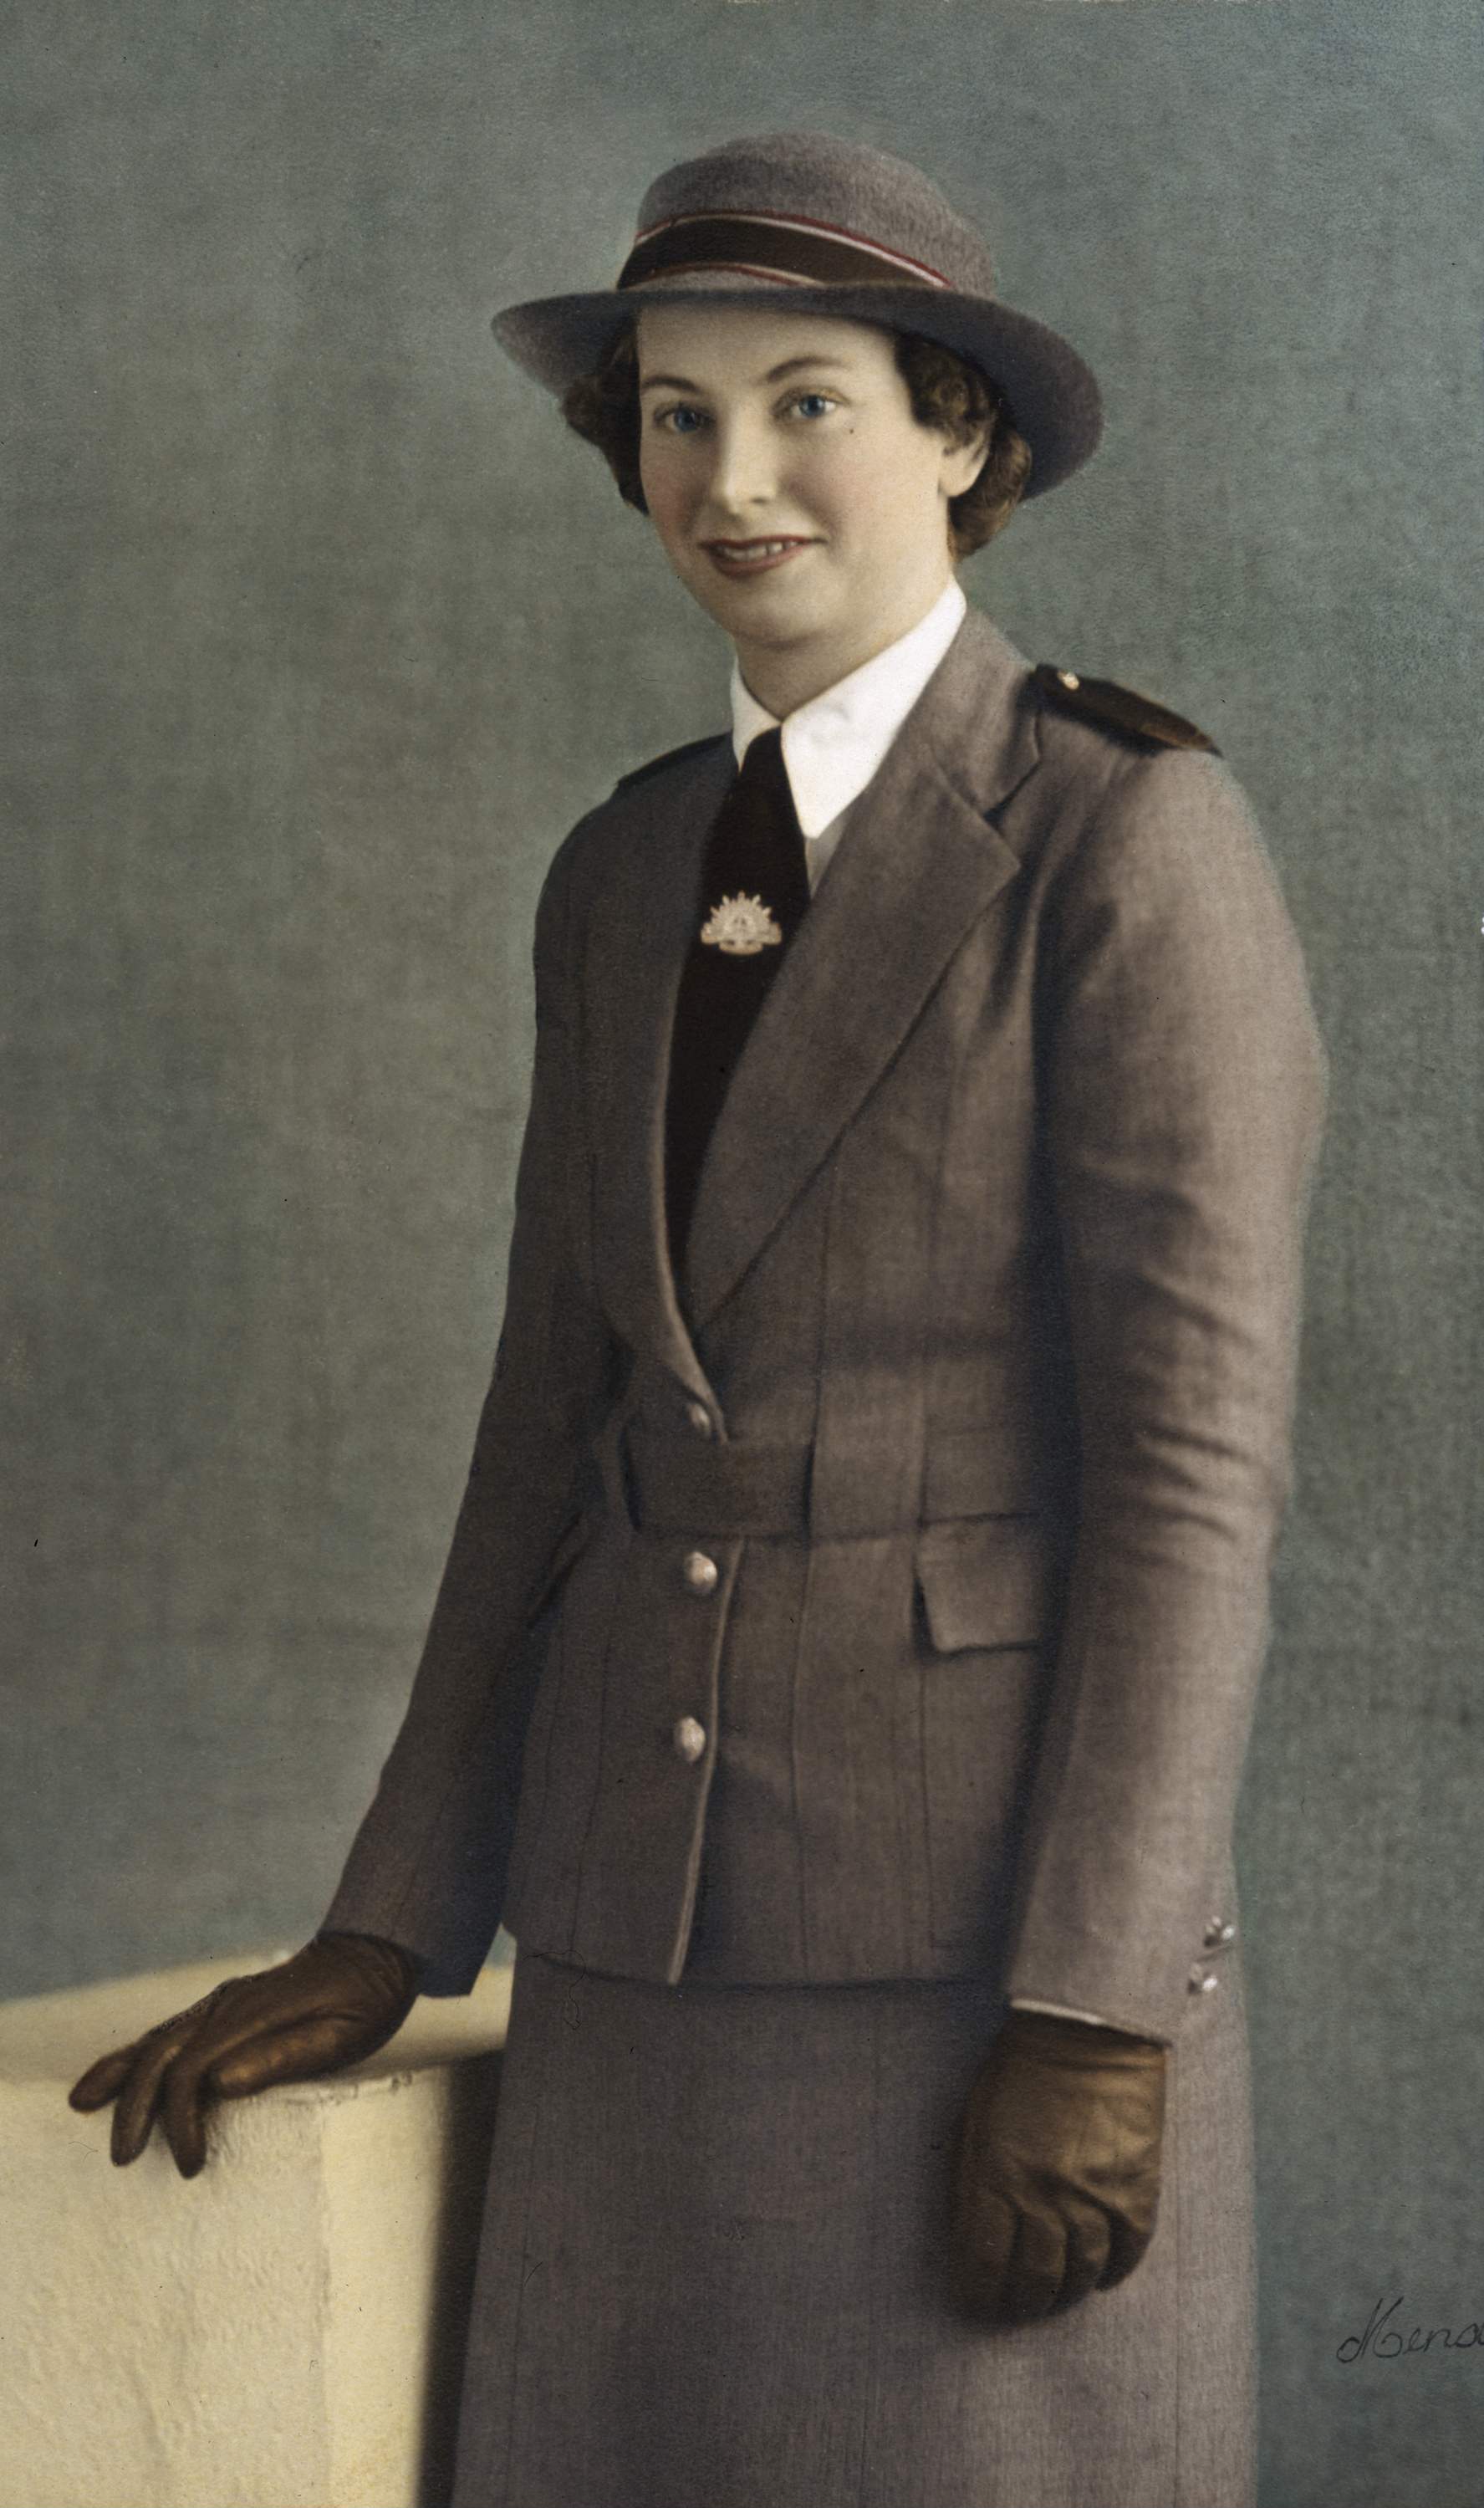 Nurse Vivian Bullwinkel, in service dress uniform.